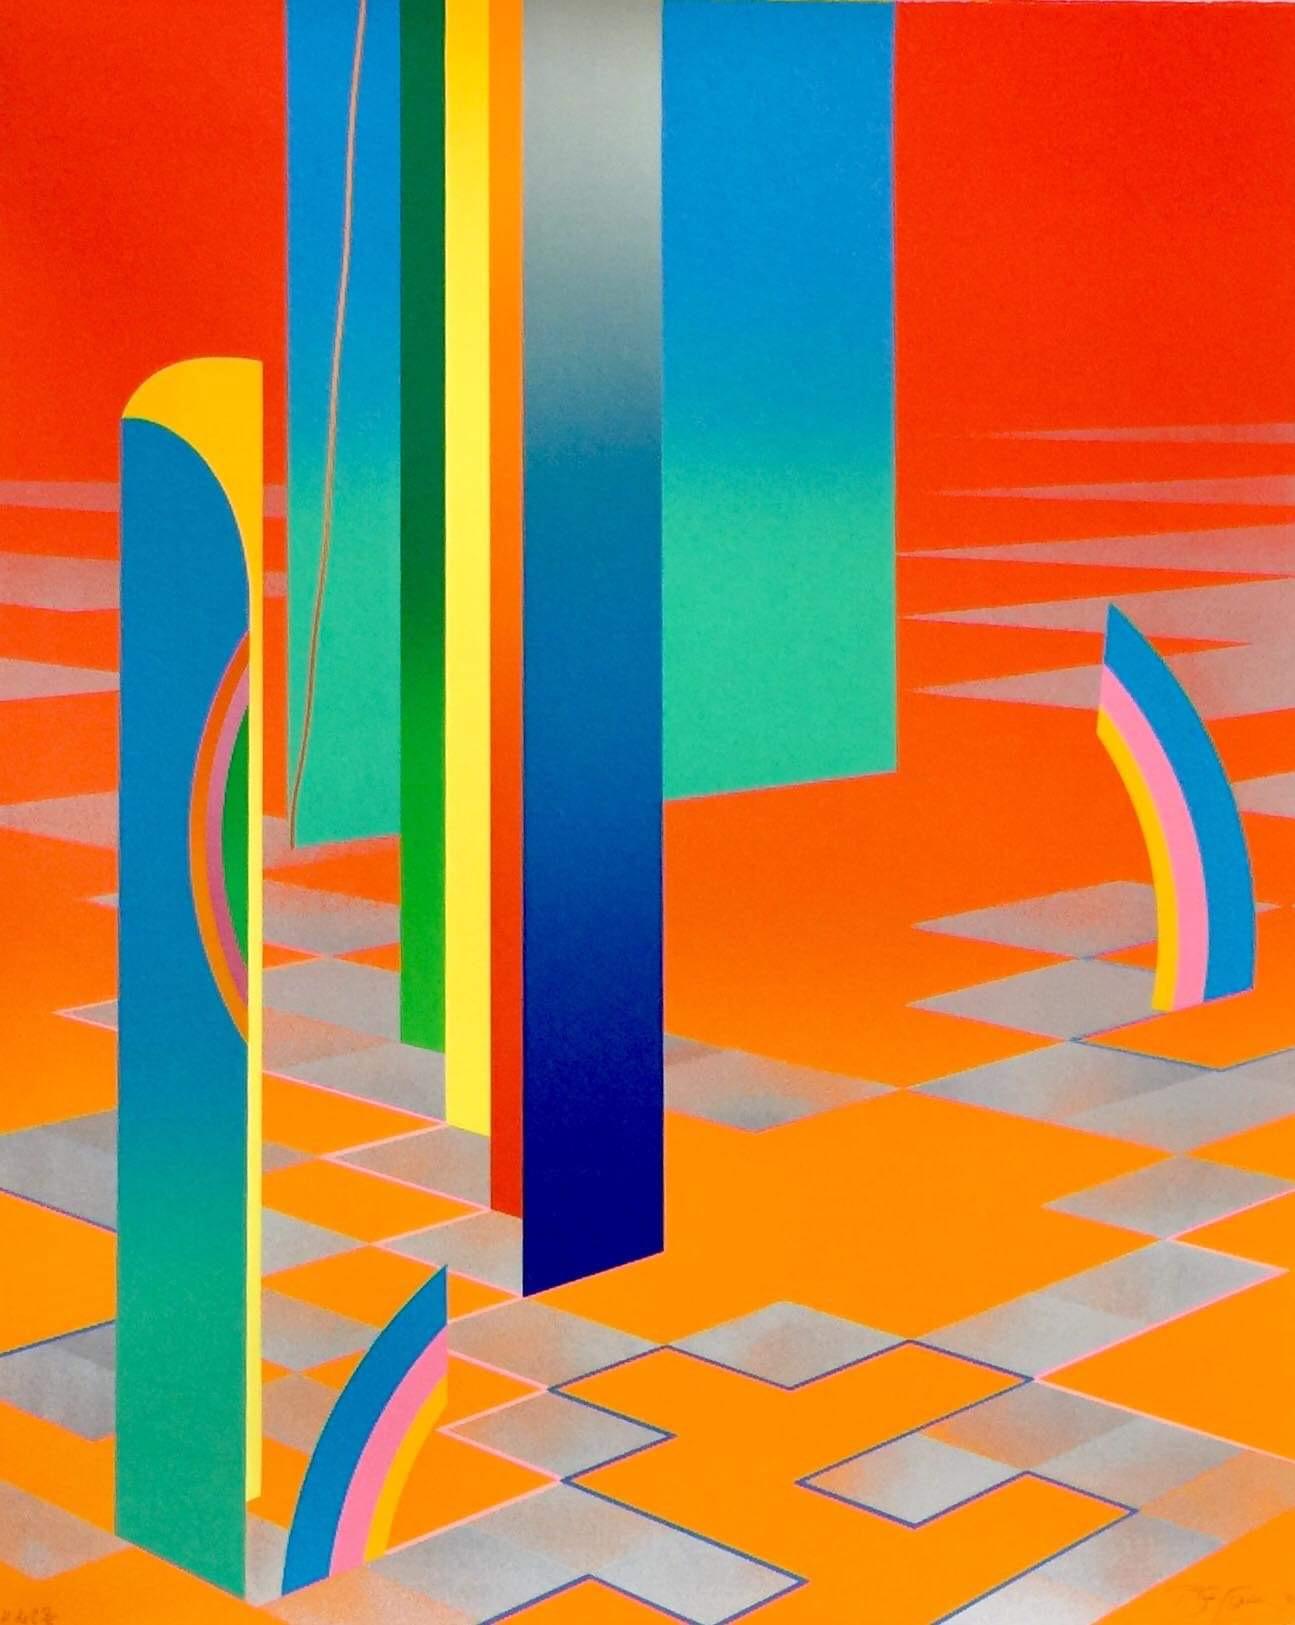 Collectors - Édition limitée des années 1980 - Édition graphique géométrique abstraite colorée et chaleureuse 2